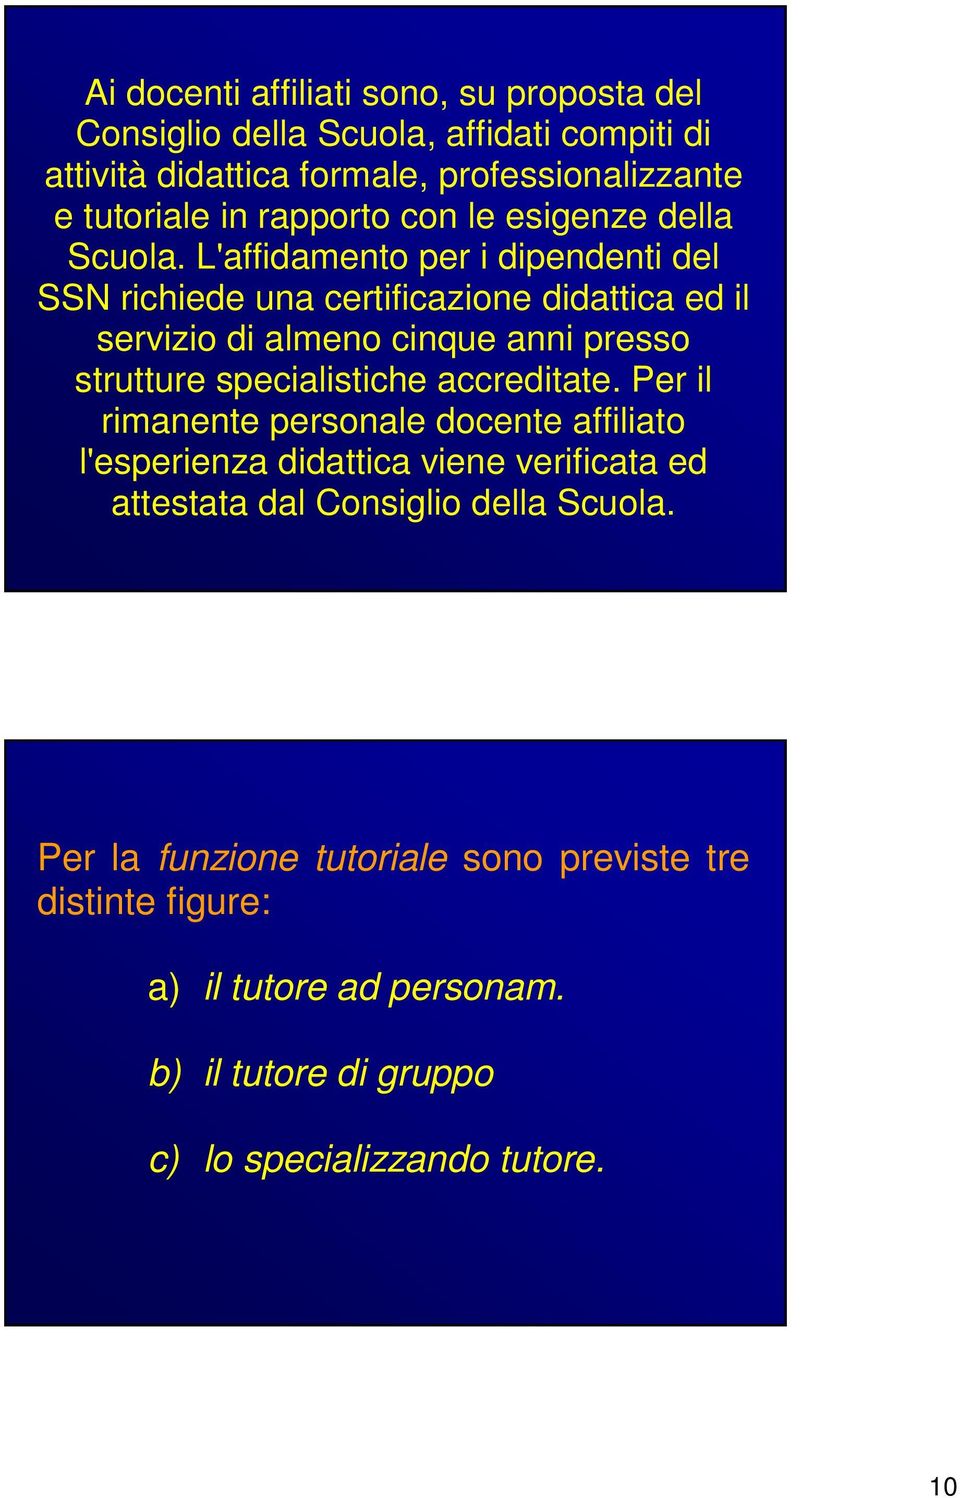 L'affidamento per i dipendenti del SSN richiede una certificazione didattica ed il servizio di almeno cinque anni presso strutture specialistiche